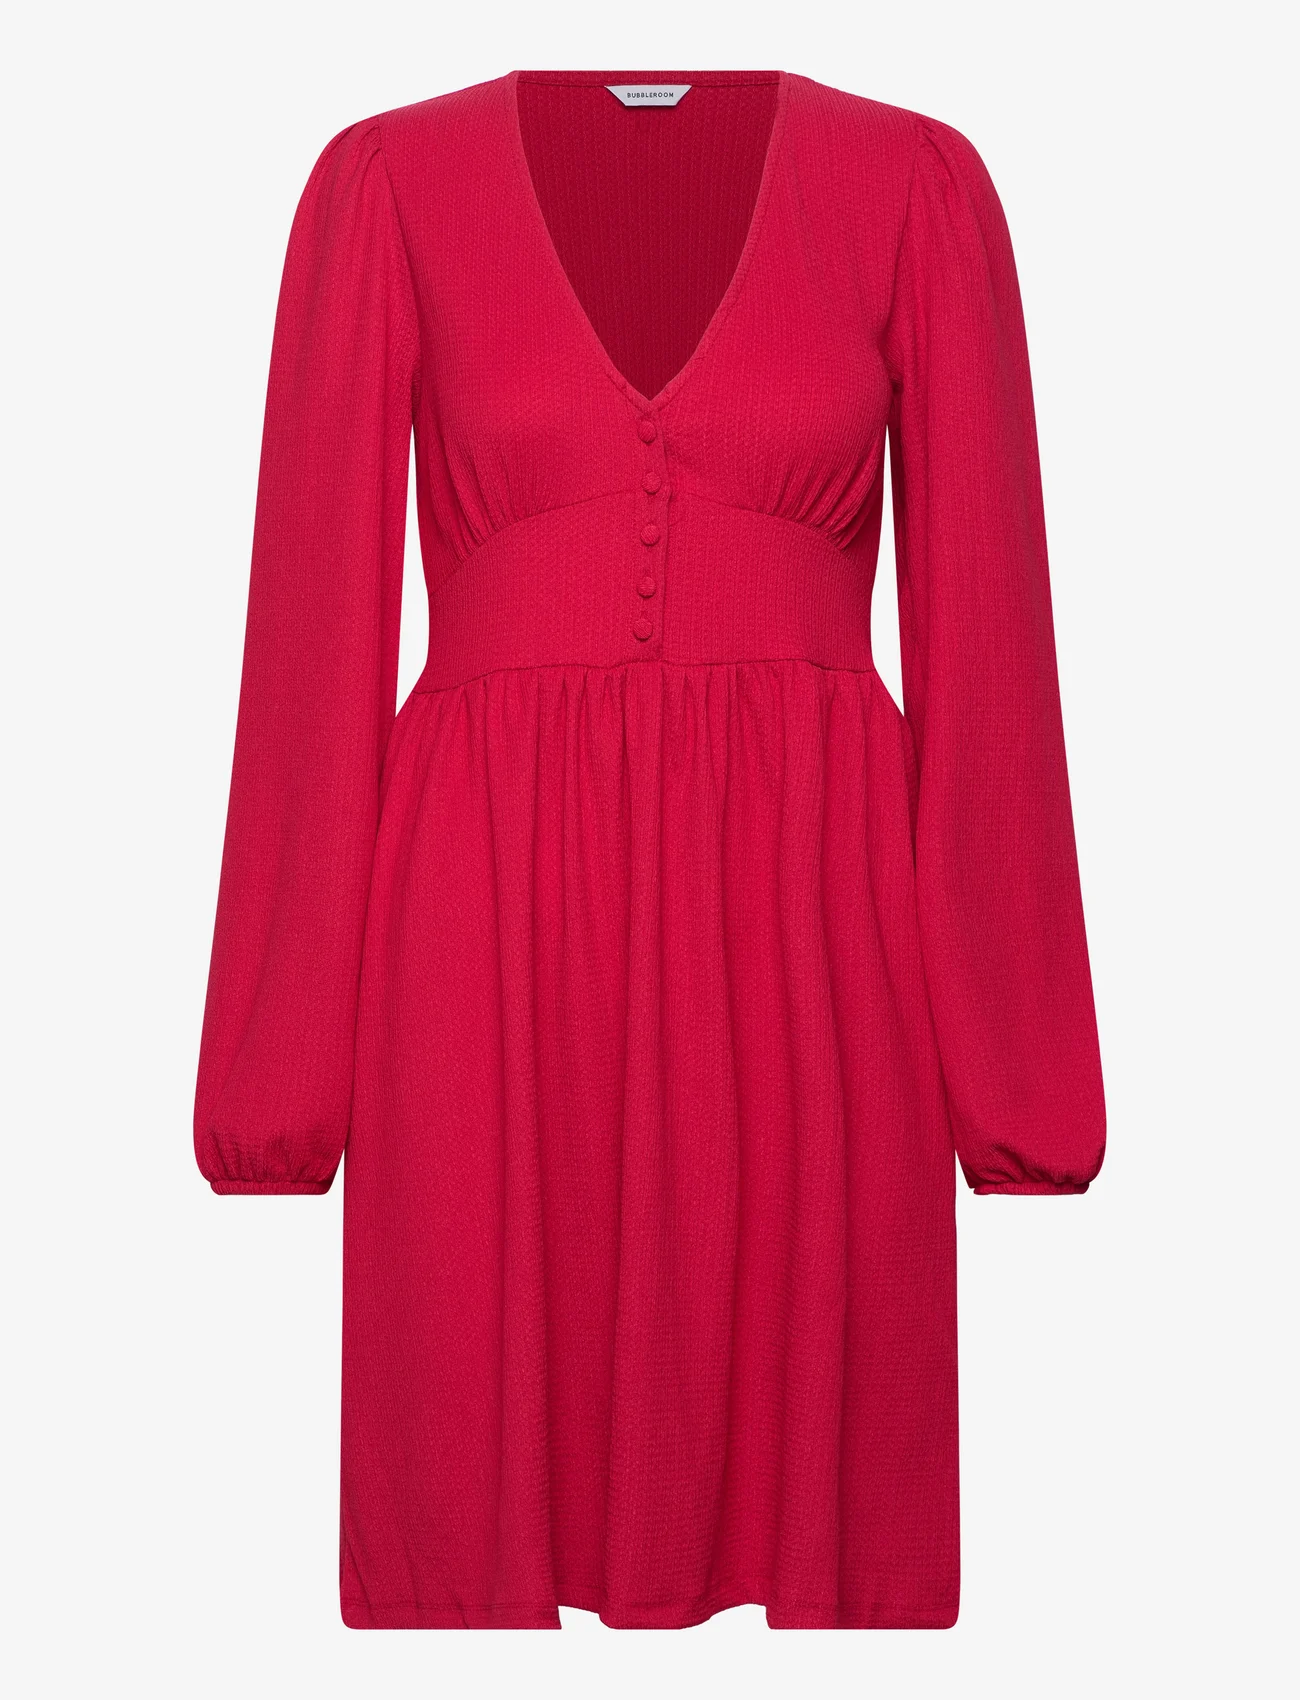 Bubbleroom - Lova Short Dress - ballīšu apģērbs par outlet cenām - red - 0